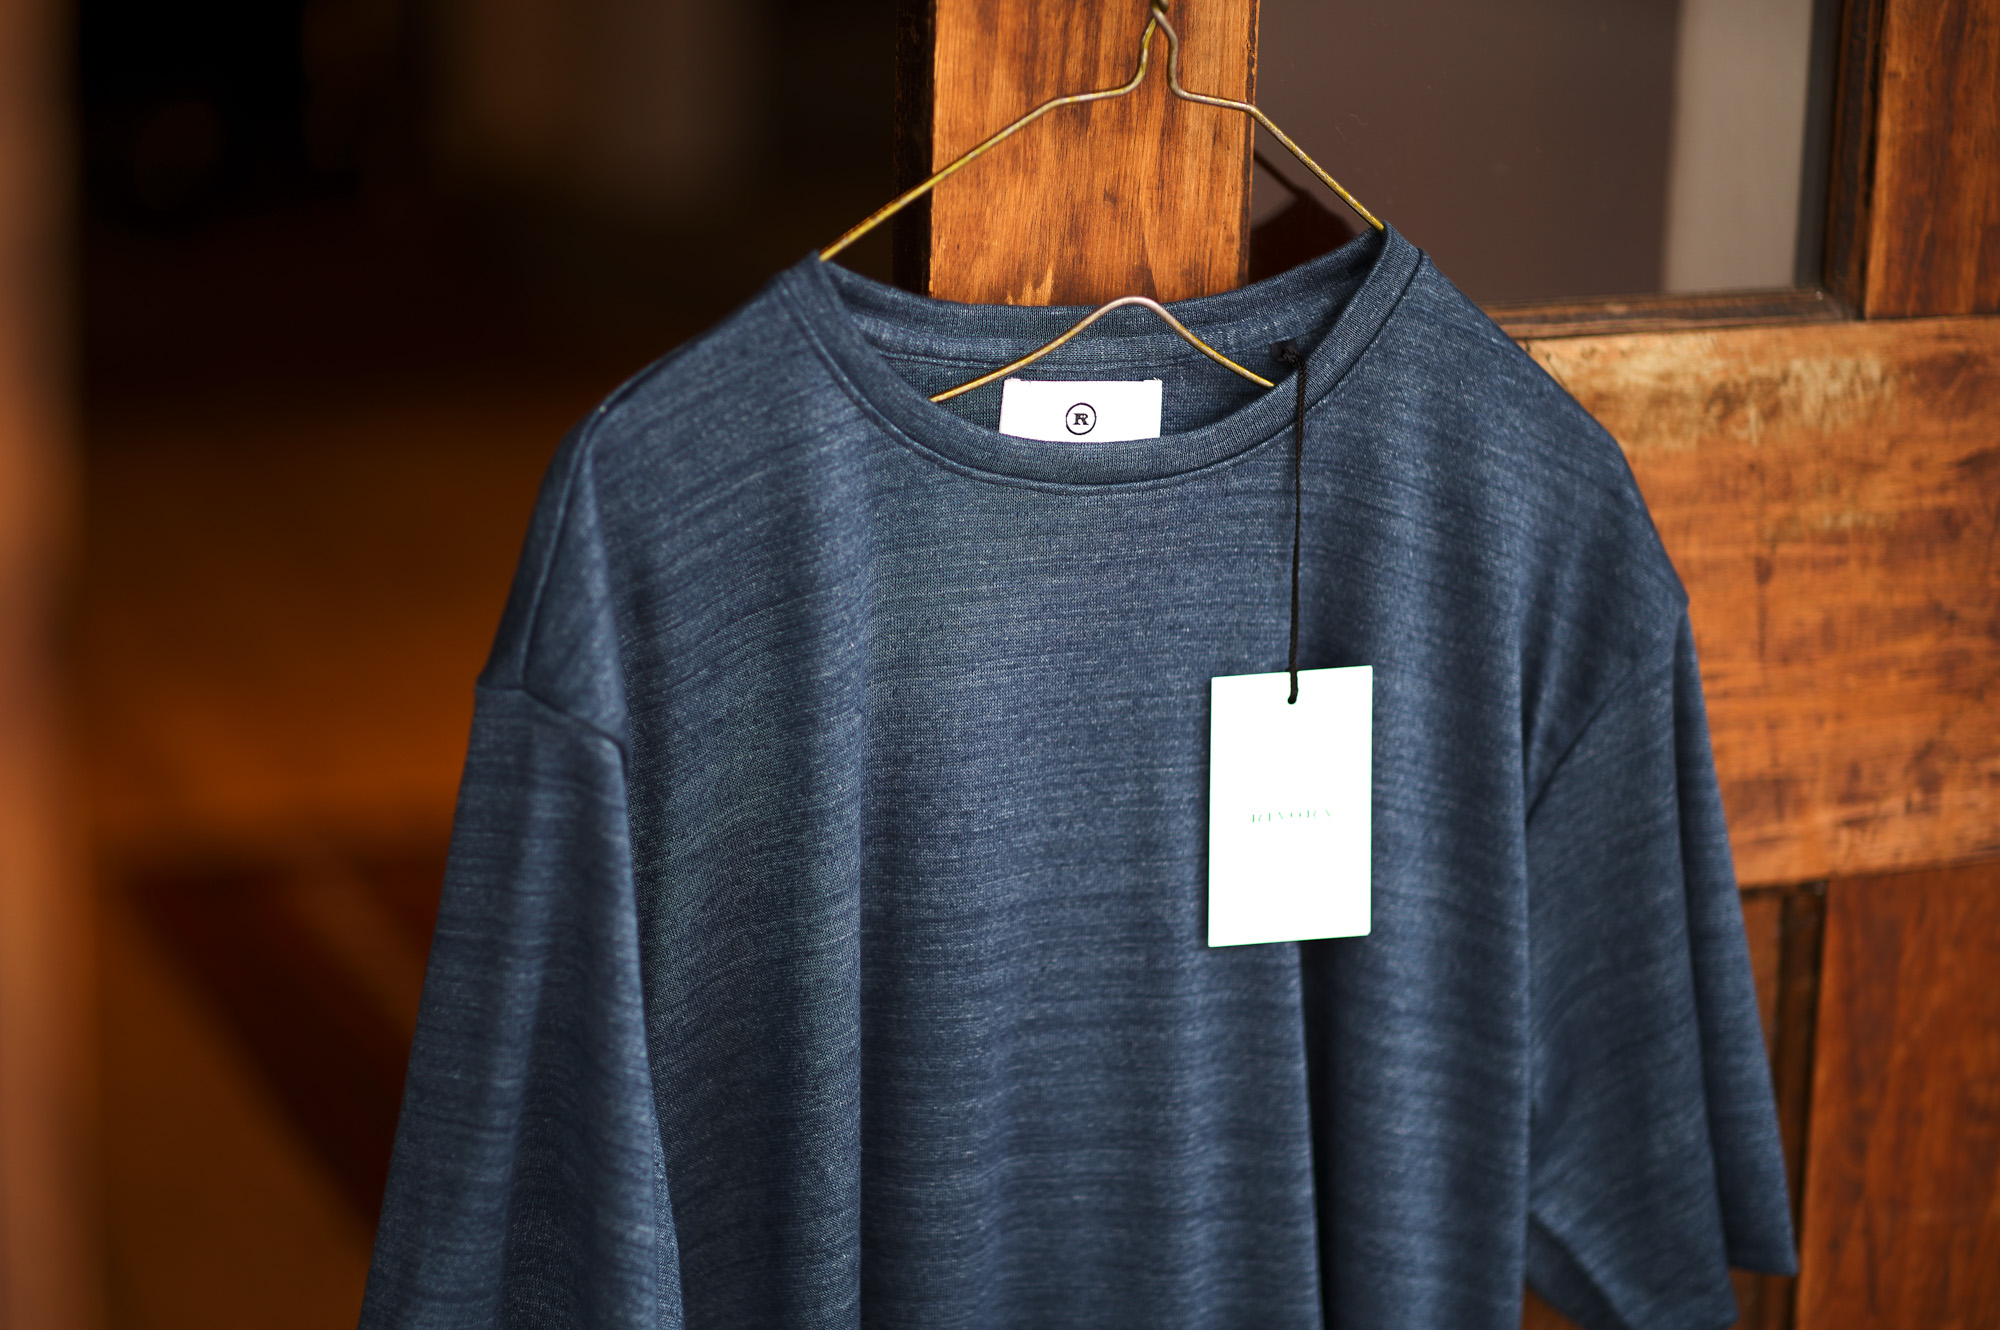 RIVORA (リヴォラ) Vintage Linen Layered T-Shirts ヴィンテージ リネン レイヤード Tシャツ INDIGO (インディゴ・051) MADE IN JAPAN (日本製) 2023 春夏新作  【入荷しました】【フリー分発売開始】愛知 名古屋 Alto e Diritto altoediritto アルトエデリット